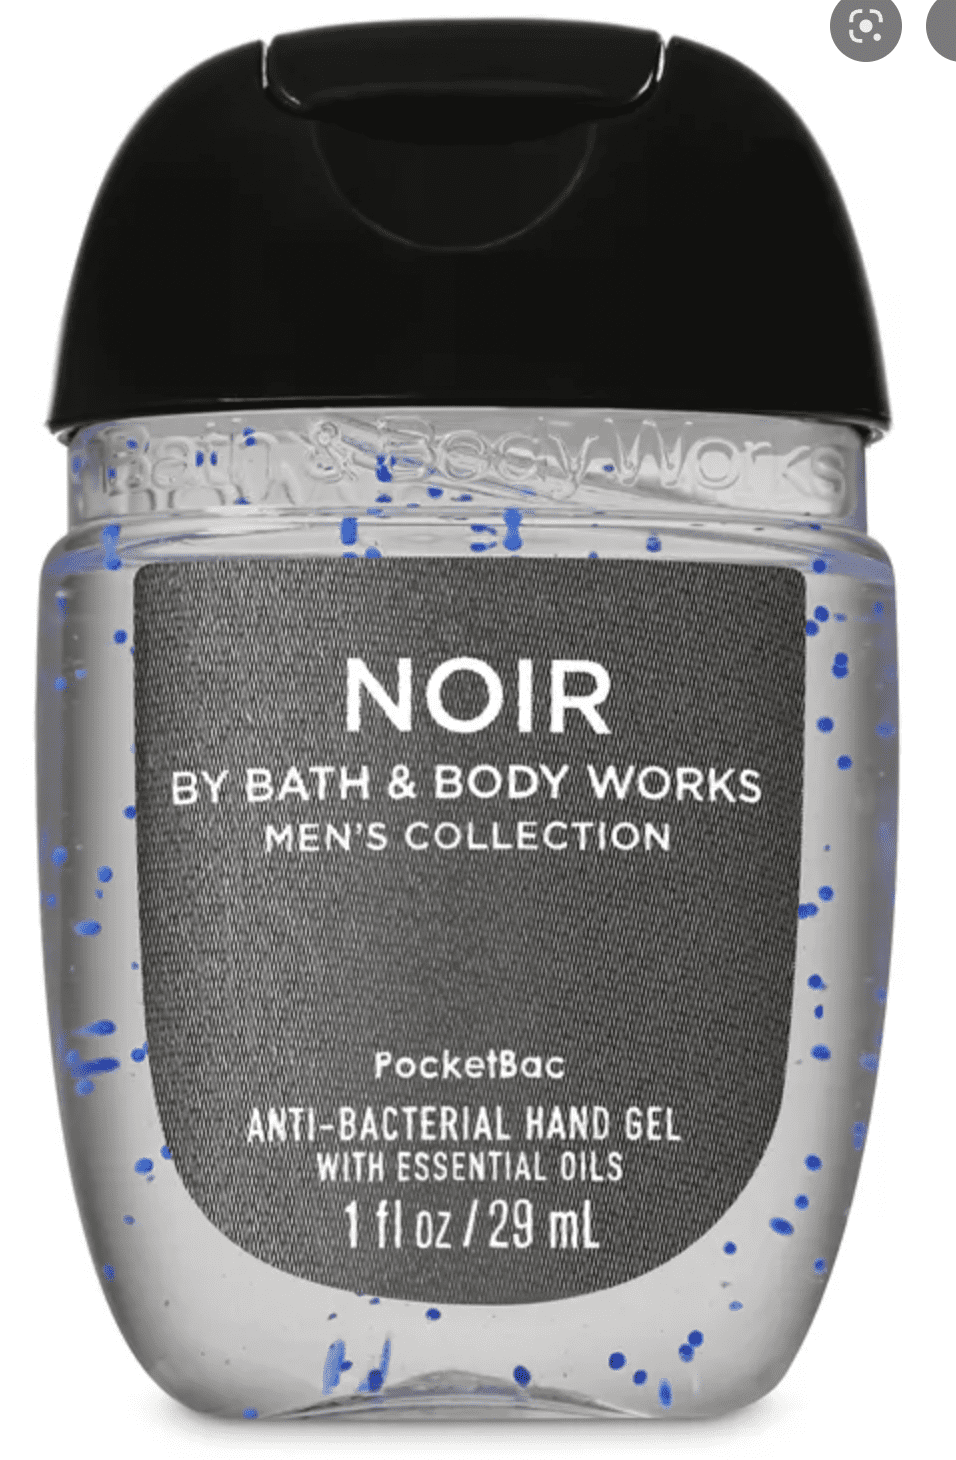 Bath & Body Works on X: We saw @CMC_22 wears Noir Deodorant from